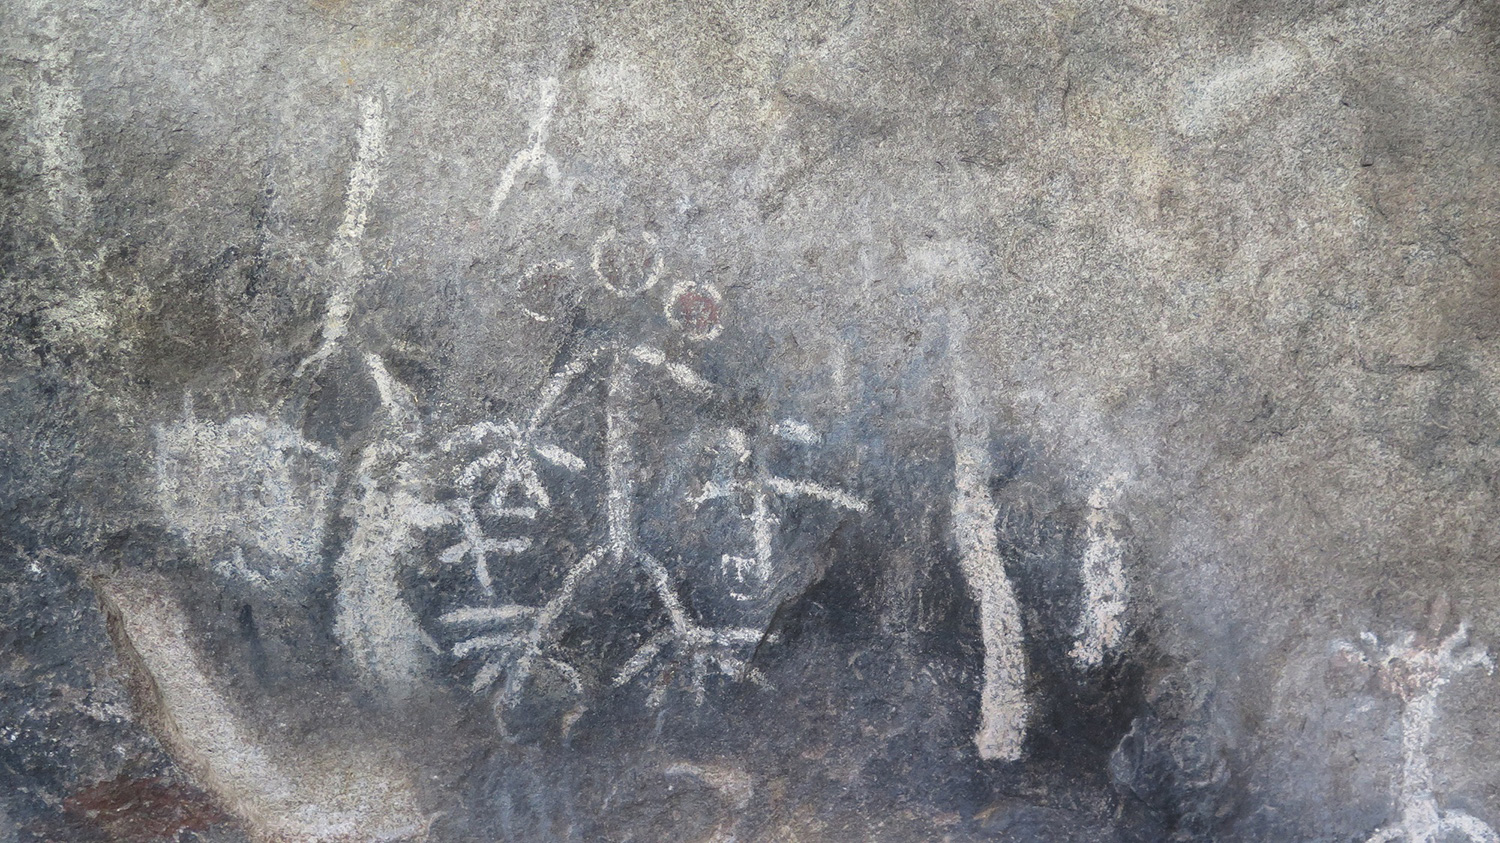 El Vallecito epicentro de la conservación de arte rupestre en el norte de Baja California